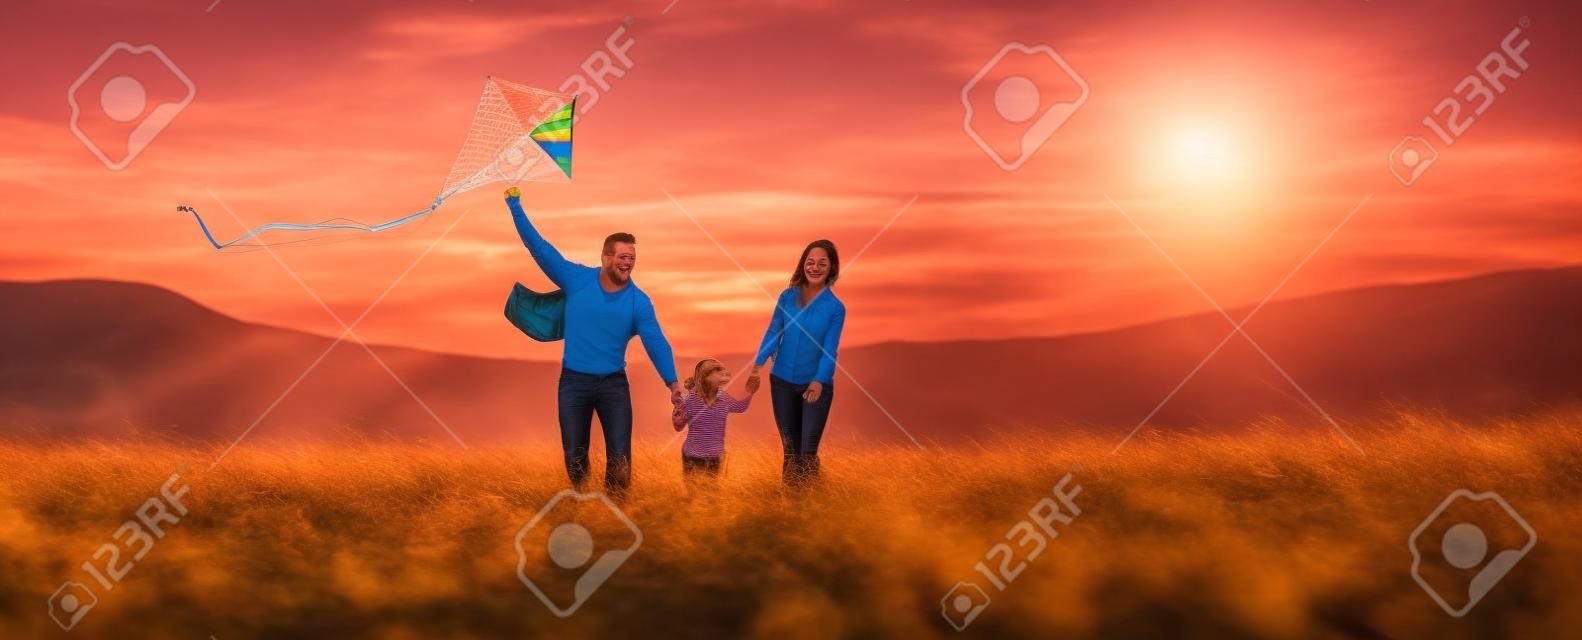 Счастливая семья, отец, мать и дочь ребенка запускают воздушного змея на природе на закате